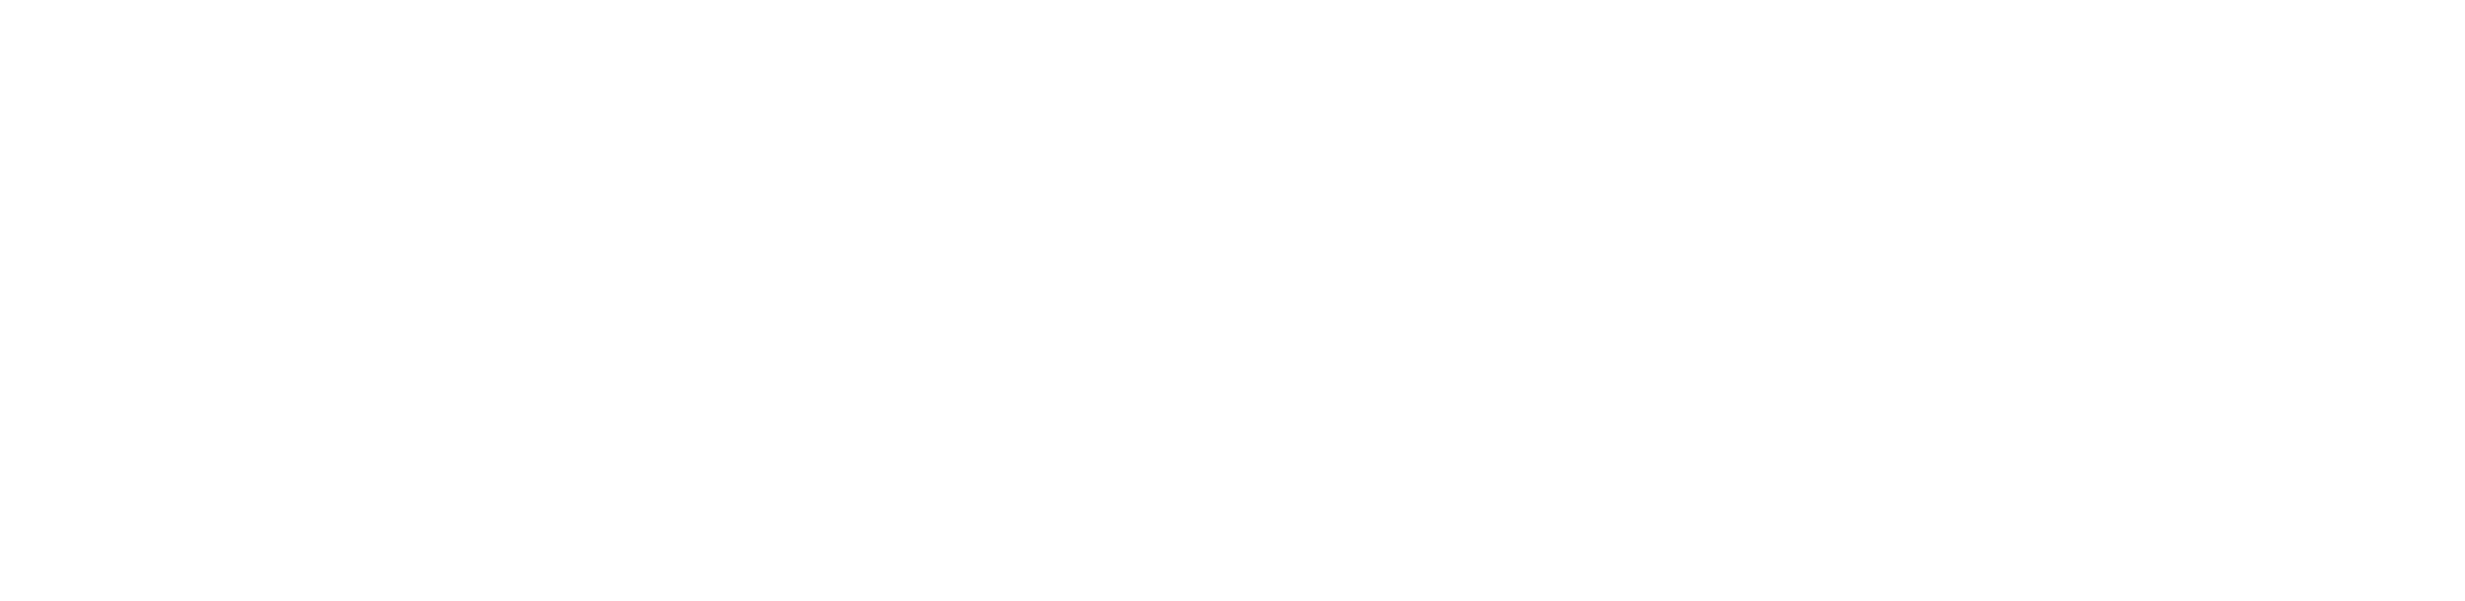 Black Supreme Logo Free PNG Image